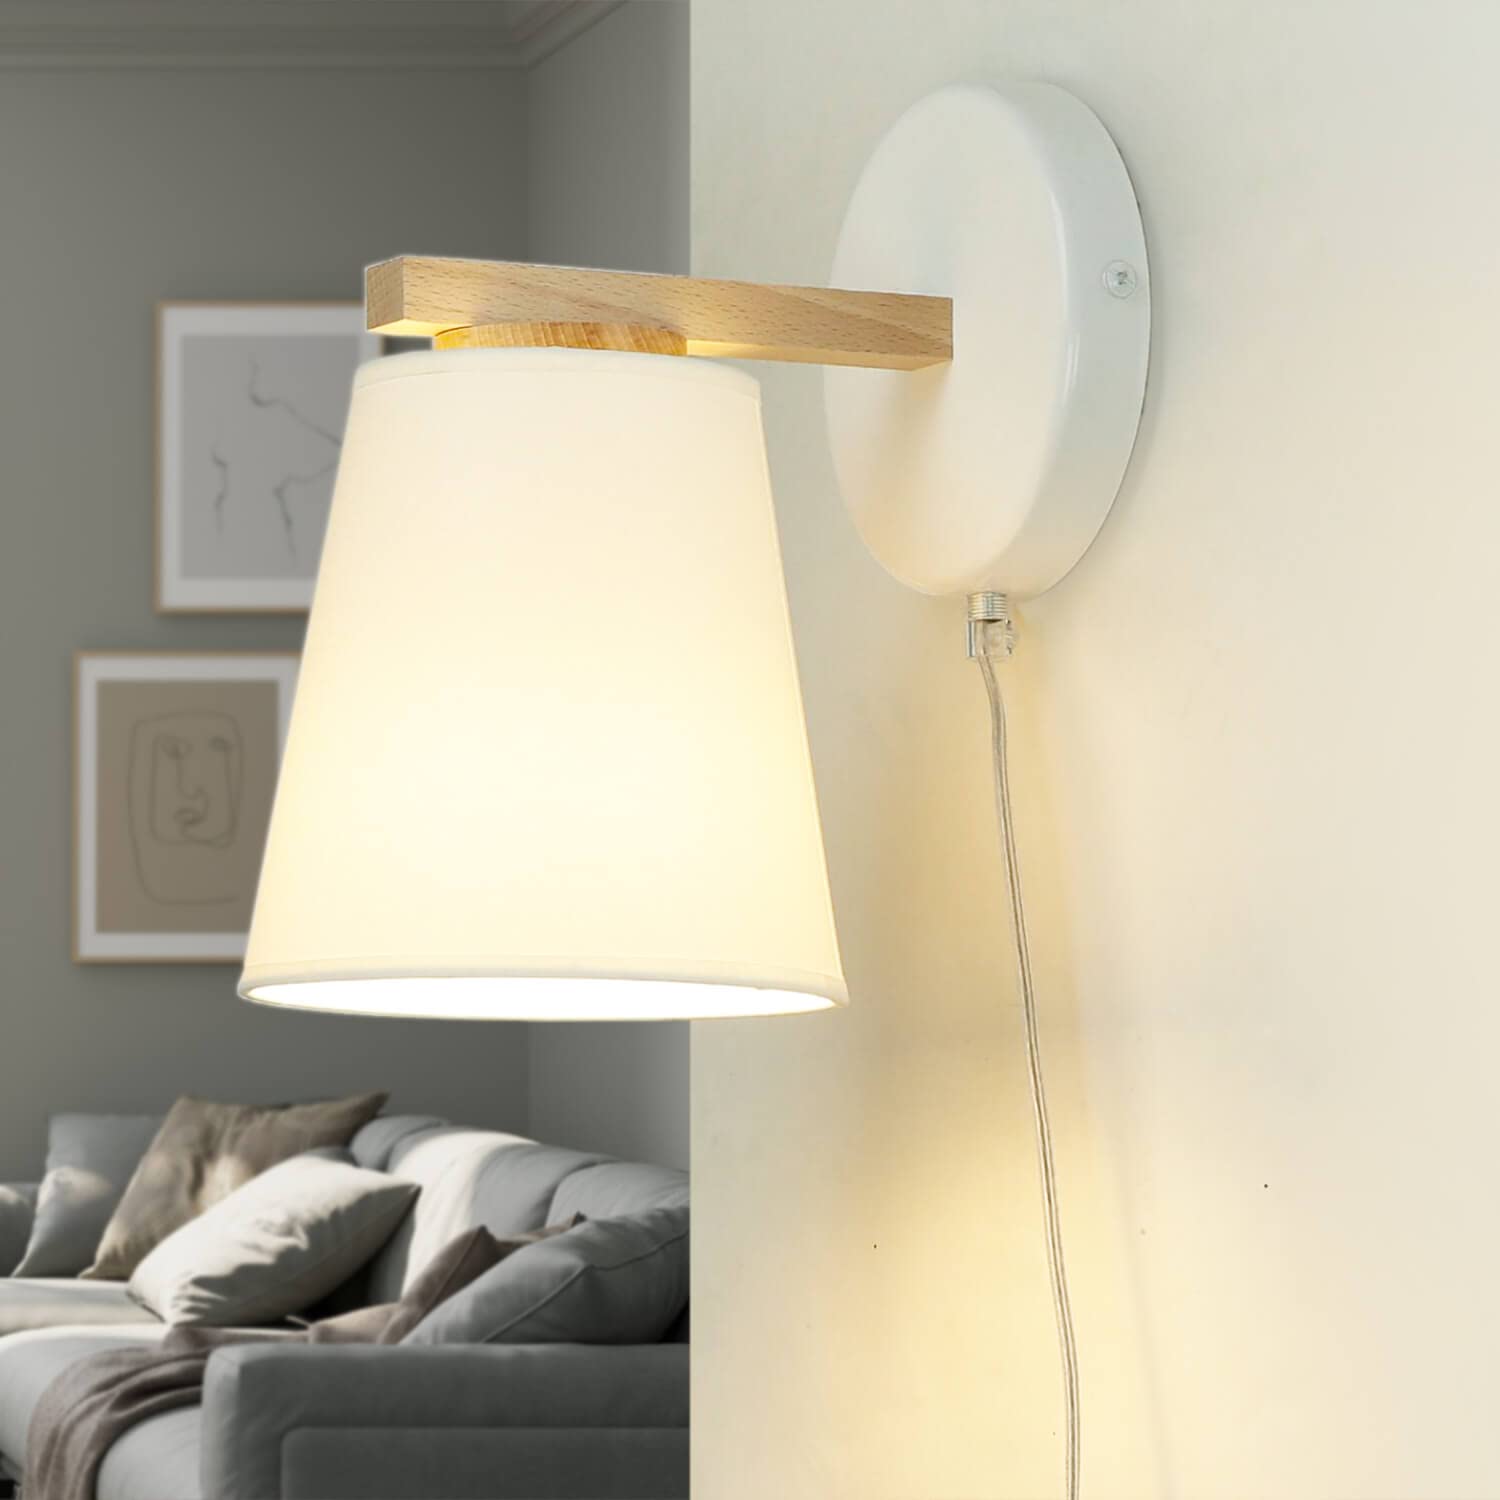 Licht-Erlebnisse Wandleuchte aus Holz & Stoff mit Kabel & Schalter in weiß skandinavischer Stil E27 bis 60W H:32cm D:45cm für Wohnzimmer Schlafzimmer Wandlampe Innen